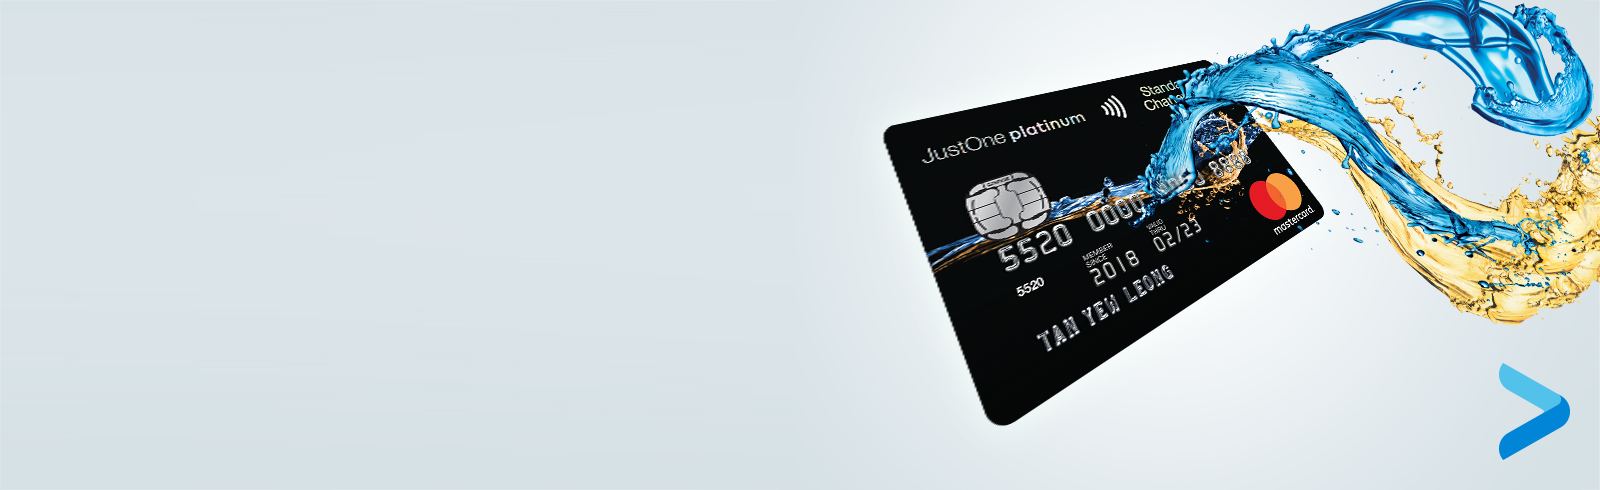 Justone Platinum Mastercard Up To 15 Cashback Standard Chartered Malaysia Standard Chartered Malaysia